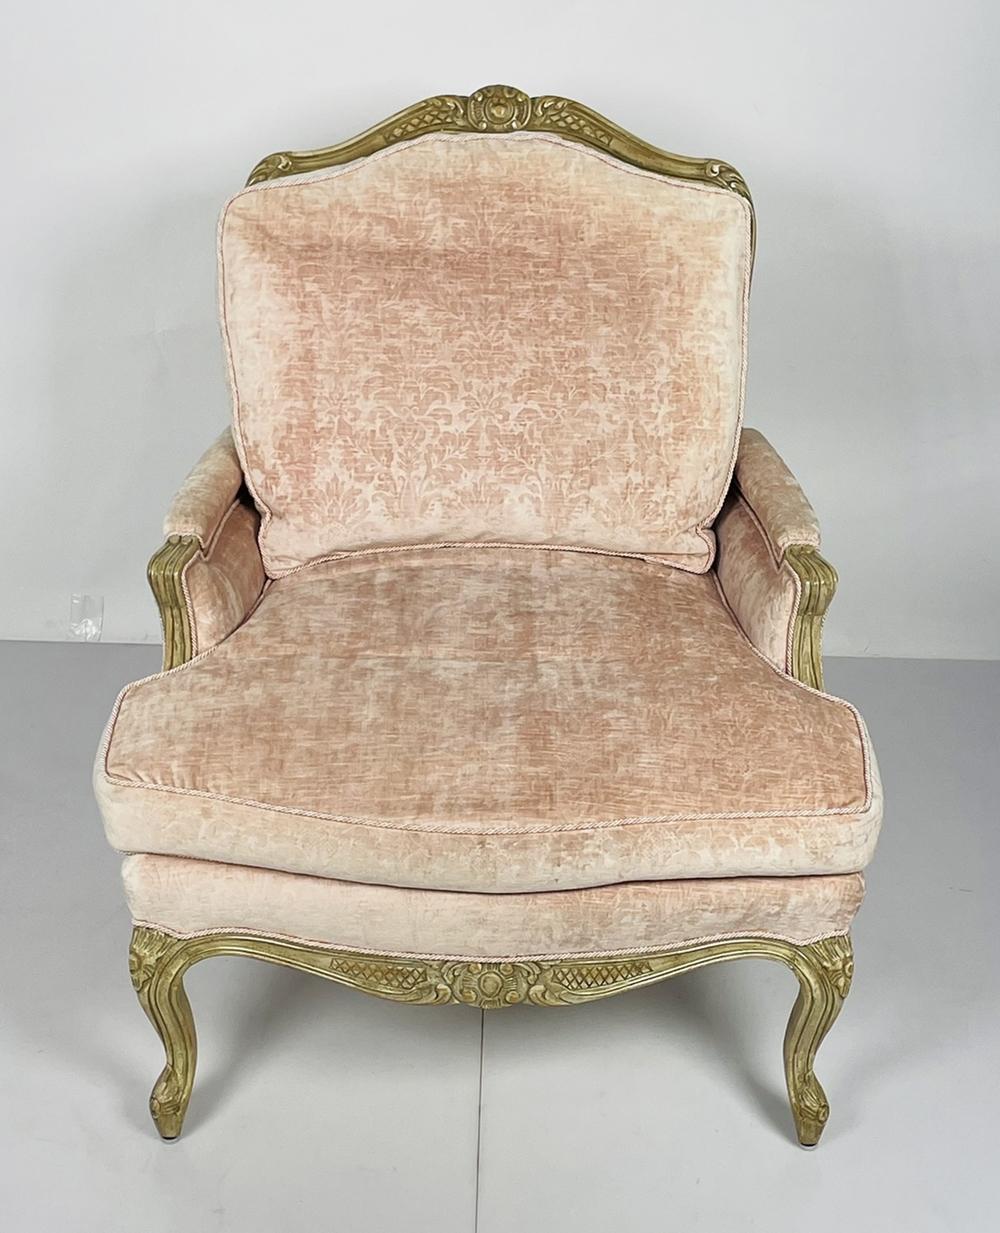 Nous vous présentons notre exquise bergère française de style Louis XV, un ajout étonnant à tout espace intérieur. Cette chaise respire l'élégance et la sophistication avec son cadre doré orné et son luxueux revêtement en tissu rose. Fabriqué dans